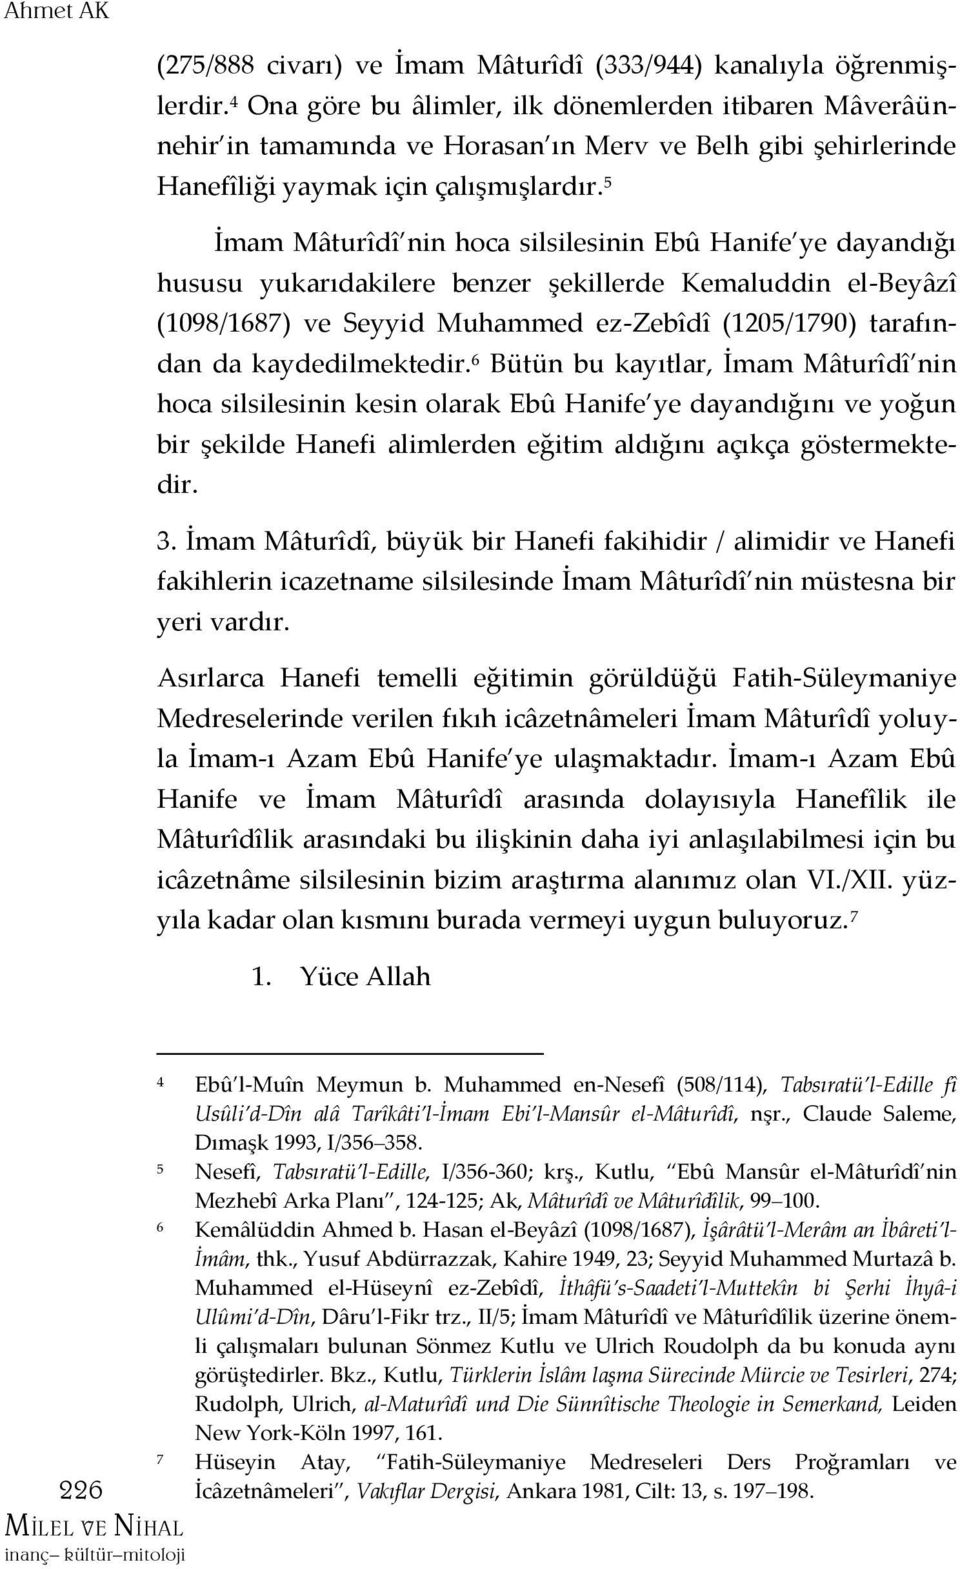 5 İmam Mâturîdî nin hoca silsilesinin Ebû Hanife ye dayandığı hususu yukarıdakilere benzer şekillerde Kemaluddin el-beyâzî (1098/1687) ve Seyyid Muhammed ez-zebîdî (1205/1790) tarafından da